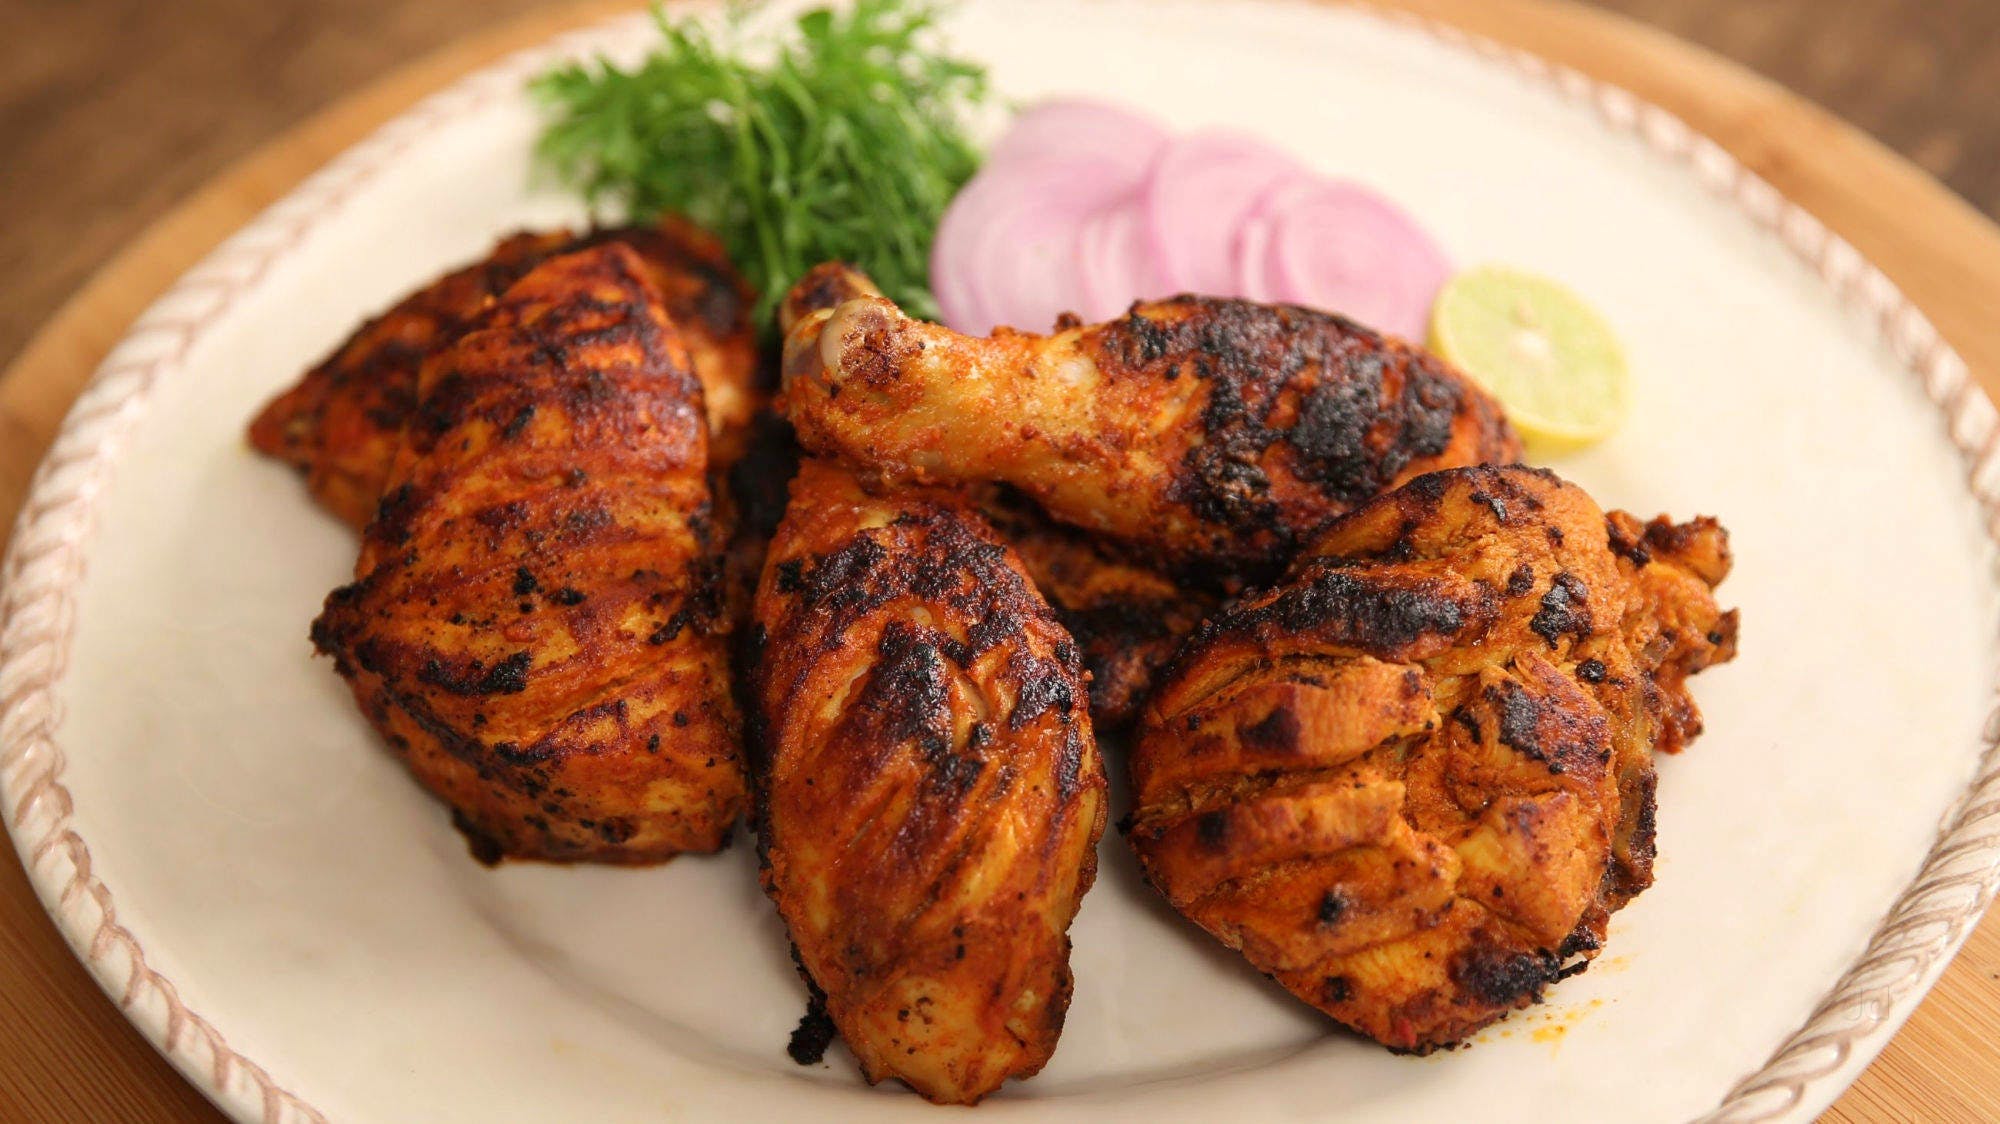 Dish,Food,Cuisine,Fried food,Chicken meat,Tandoori chicken,Ingredient,Barbecue chicken,Chicken tikka,Meat